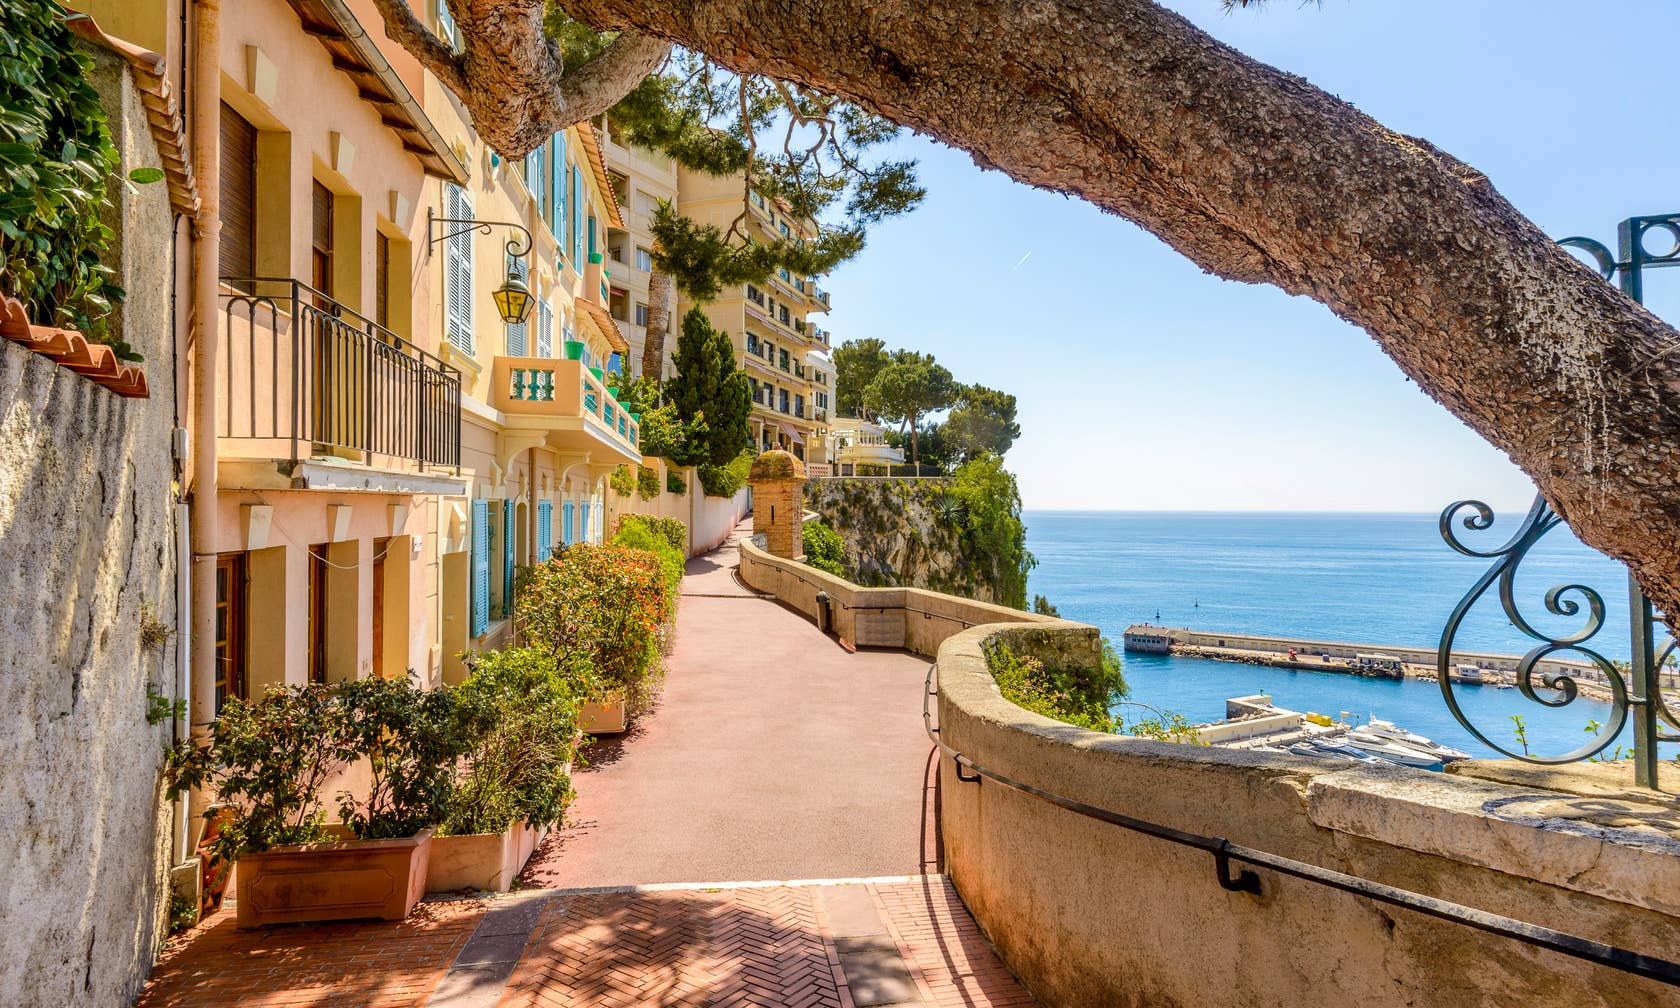 Monako konumunda kiralık tatil yerleri